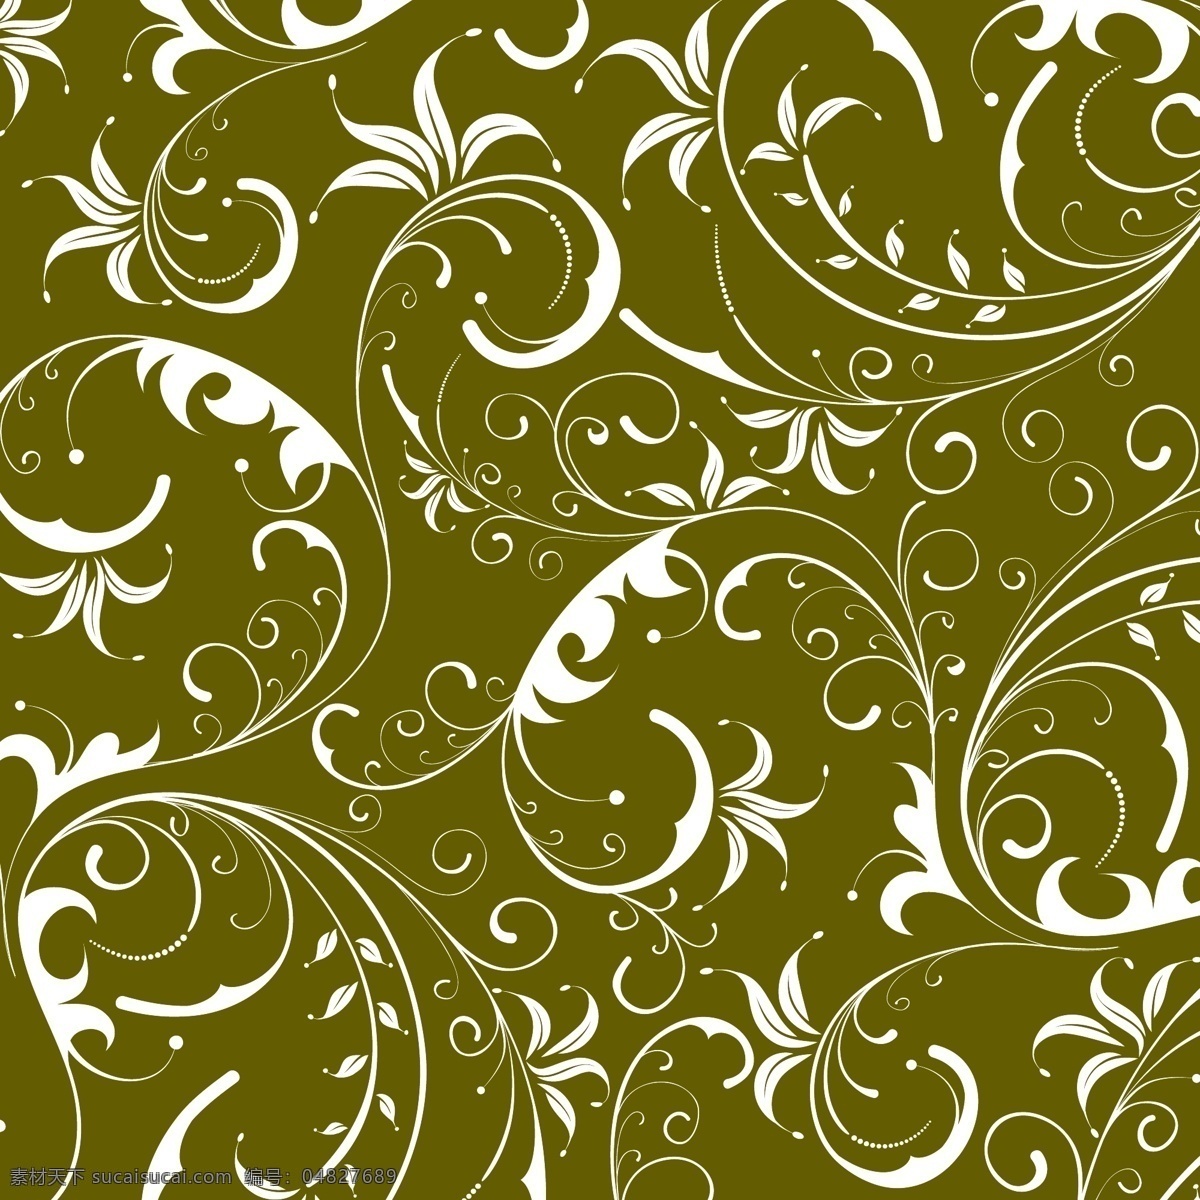 欧式花纹 花藤蔓 包装素材 高端 布料印花 丝巾印花 底纹边框 背景底纹